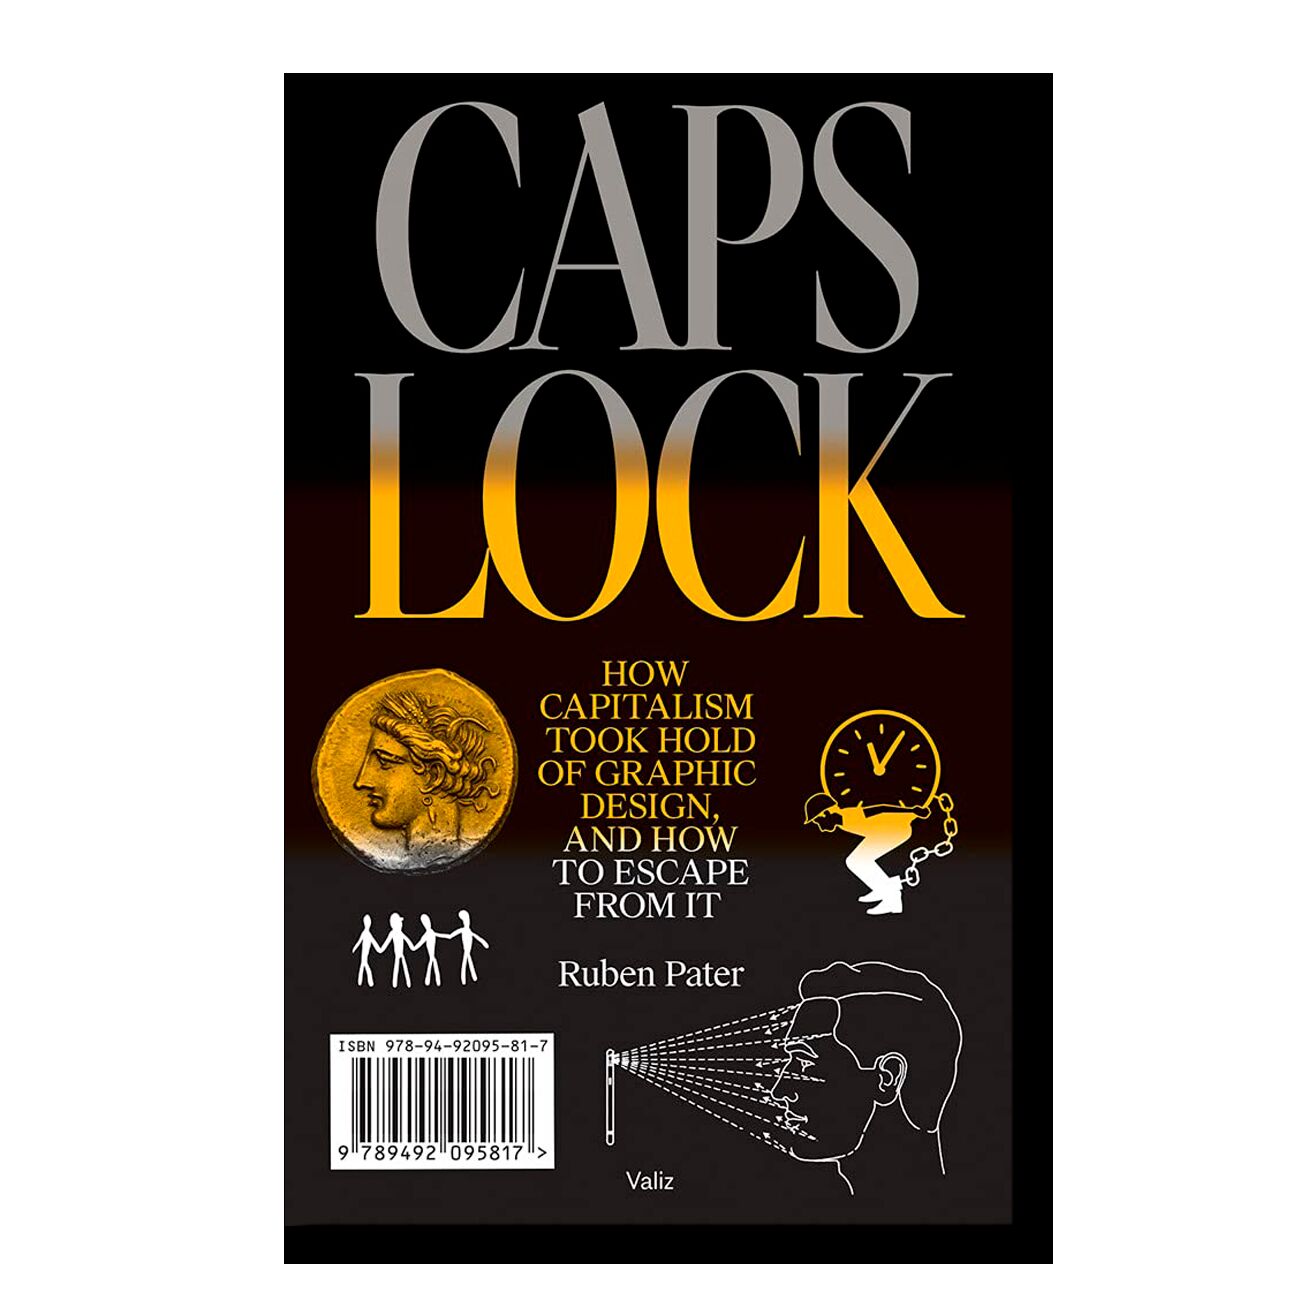 CAPS LOCK: How Capitalism Took Hold of Graphic Design